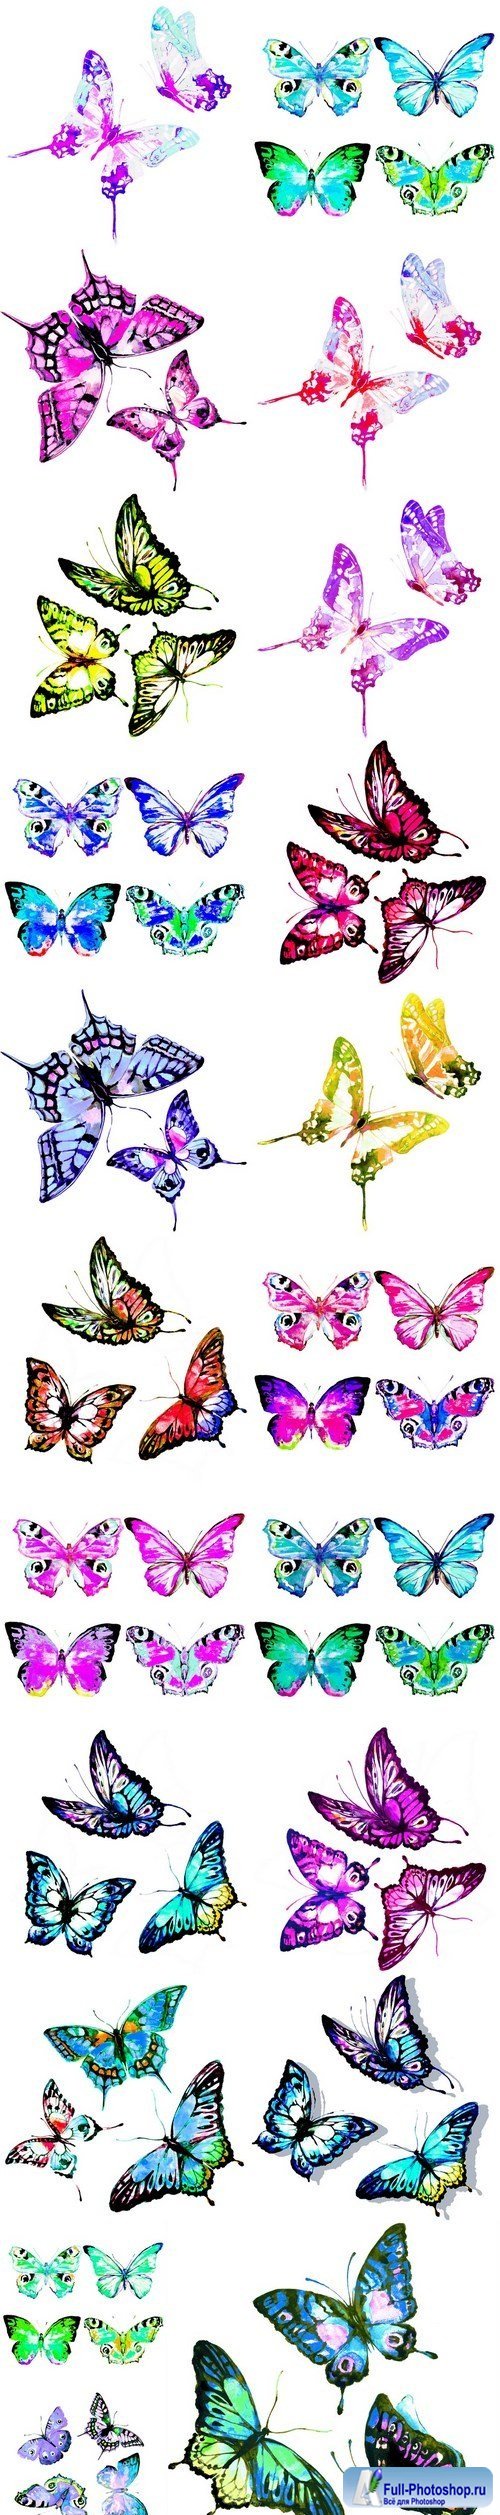 Beautiful watercolor butterflies - 21xUHQ JPEG